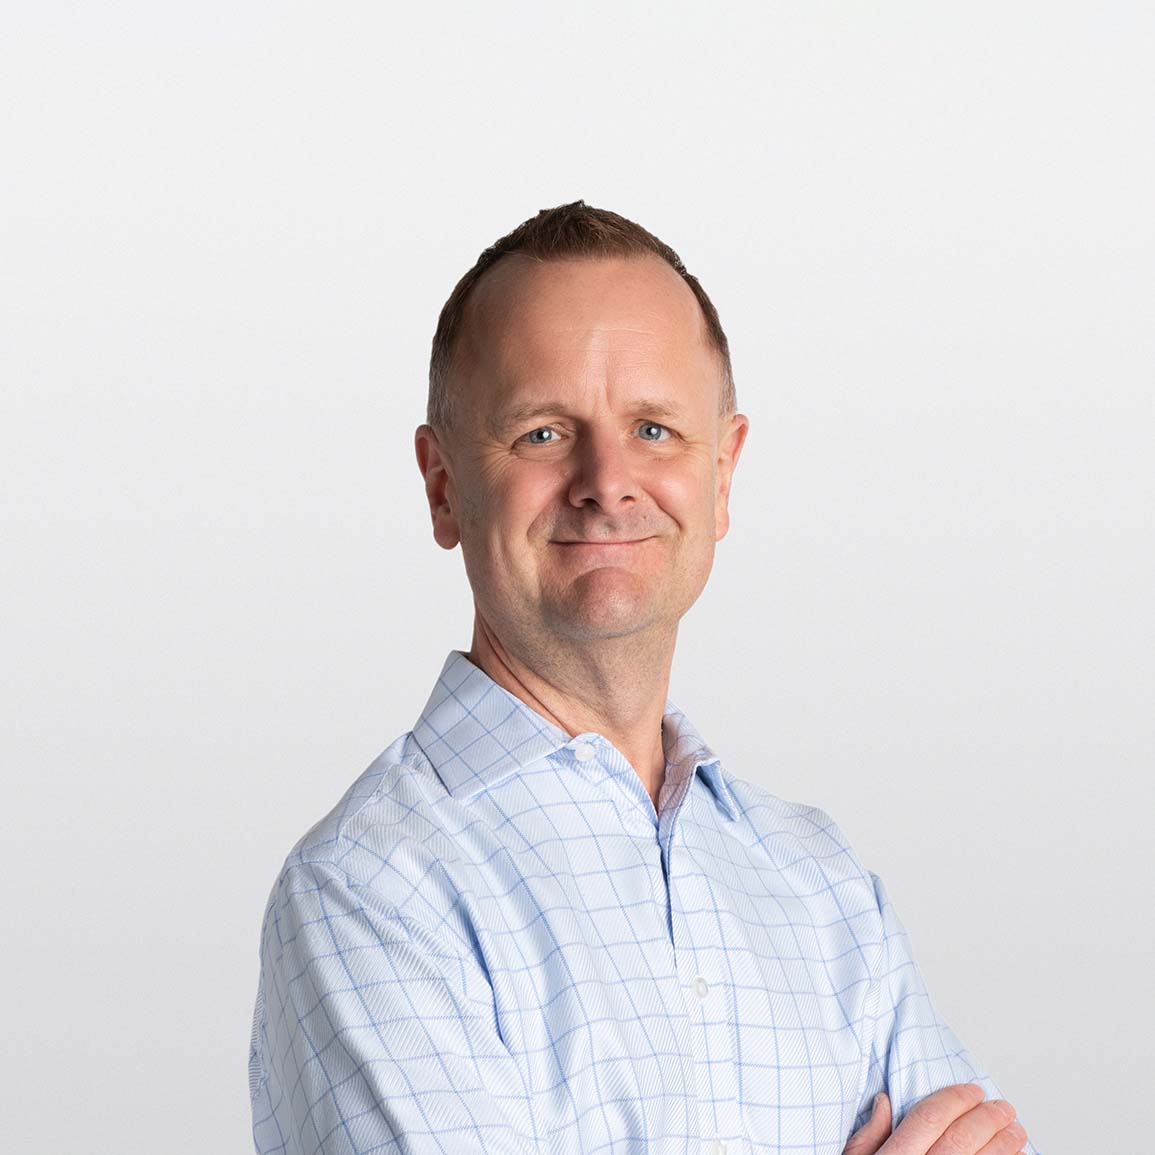 Image of Scott McCully, Senior Financial Advisor, on white background.